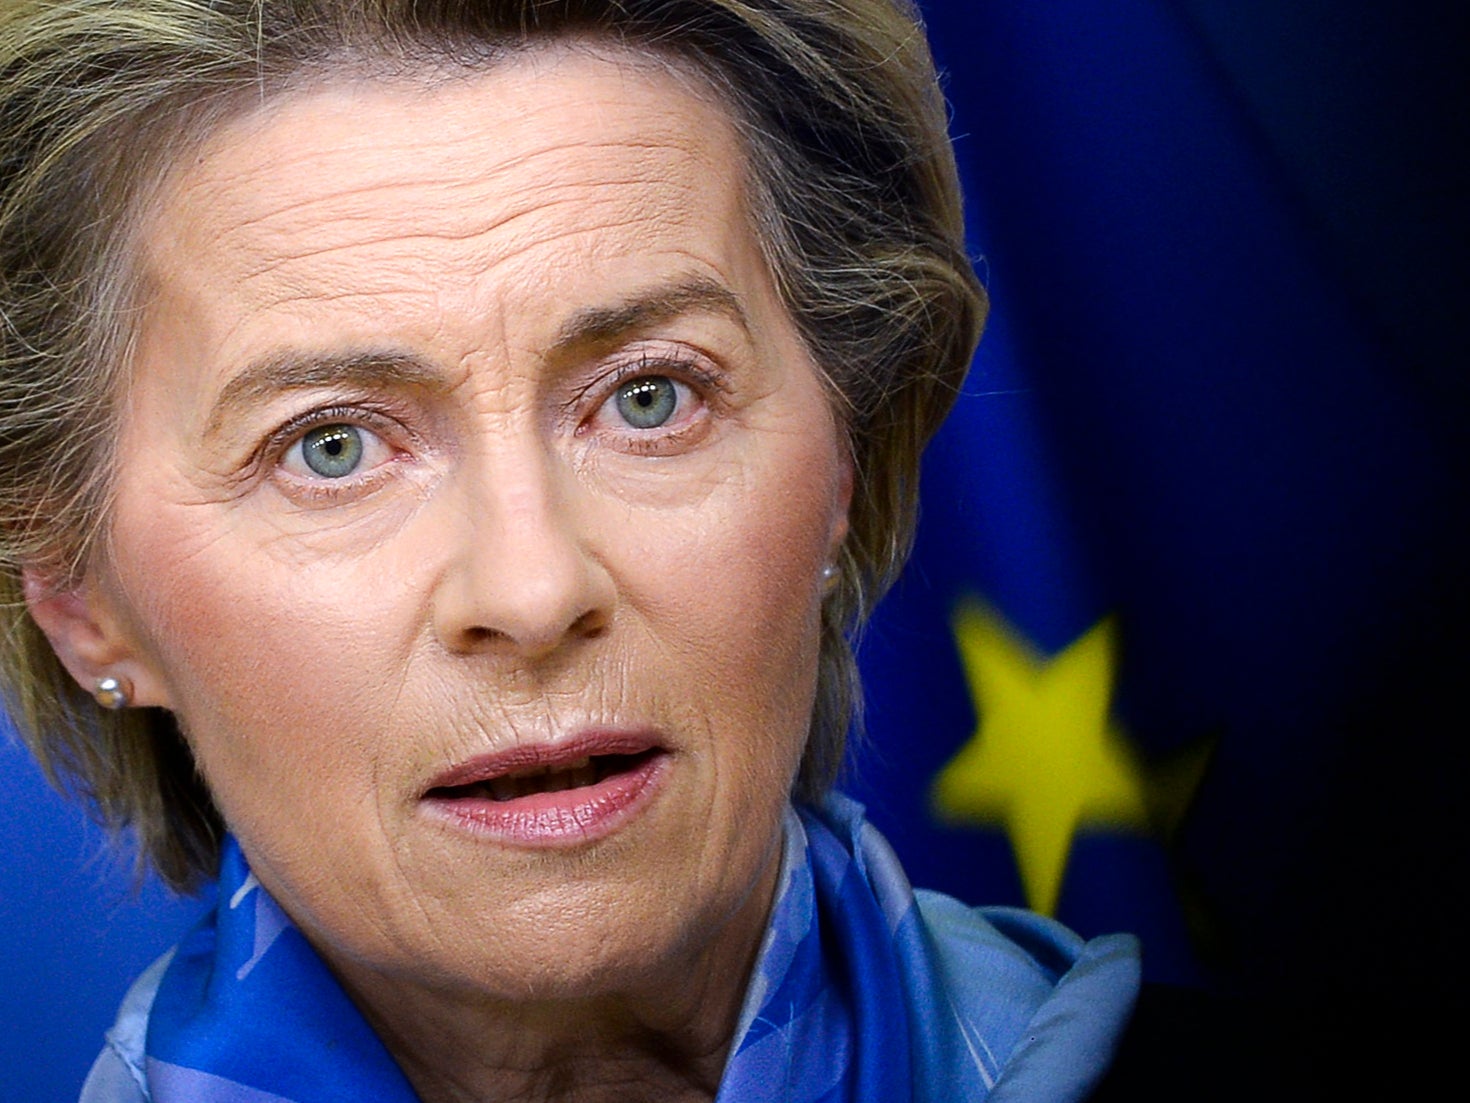 Ursula von der Leyen, president of the European Commission, got it wrong on vaccines